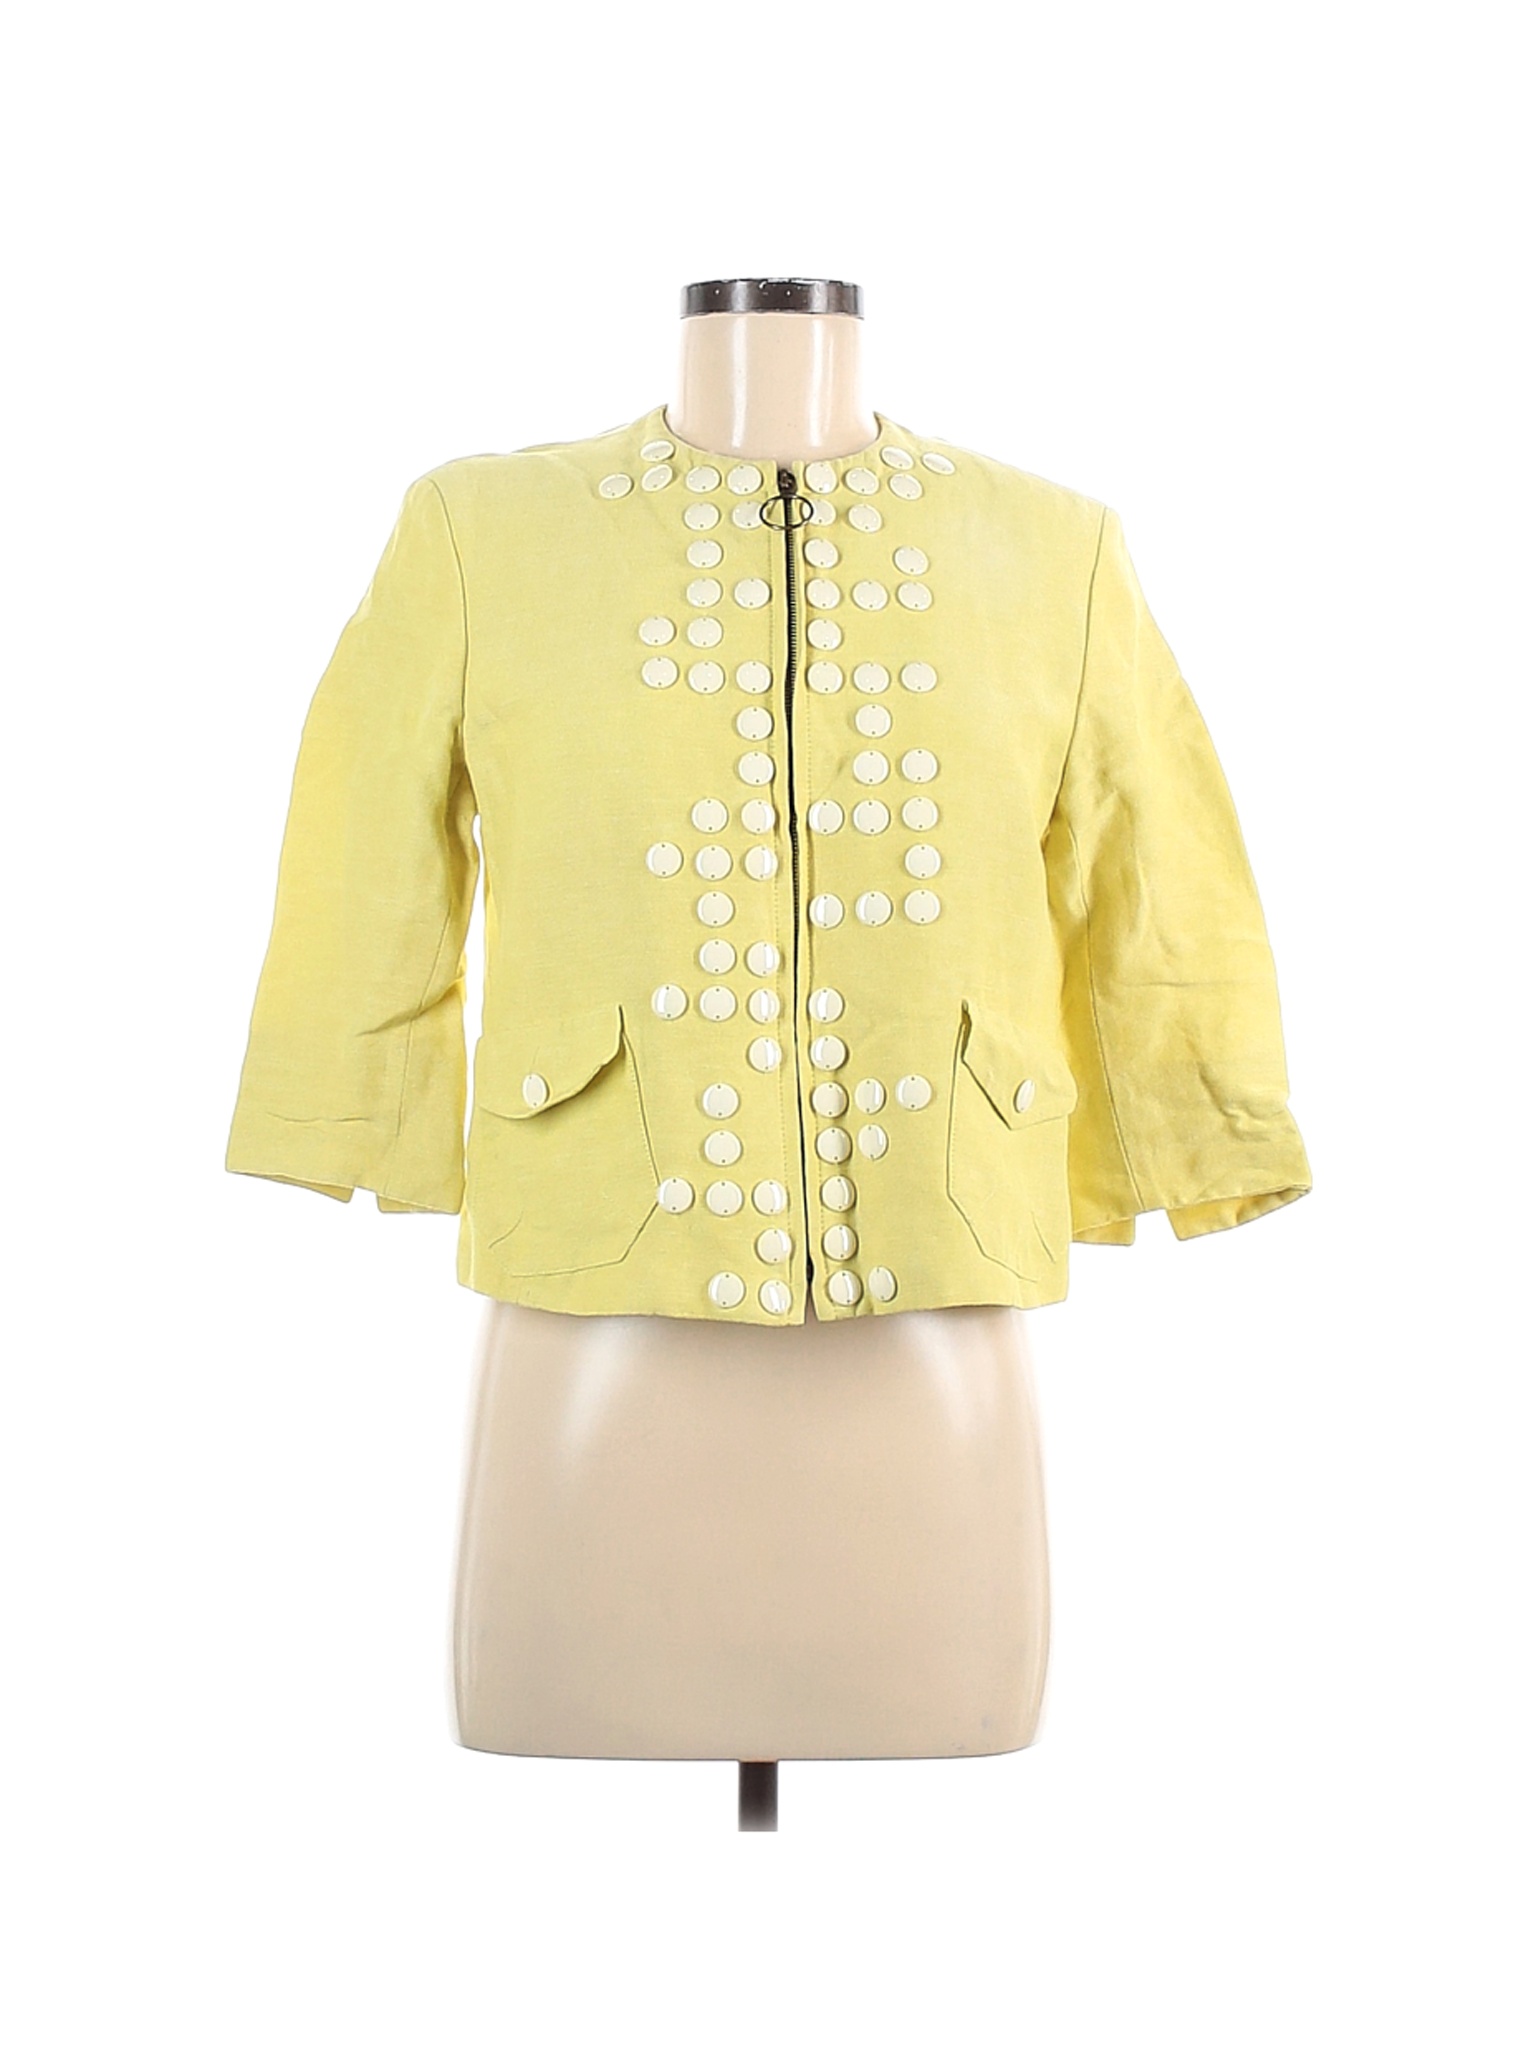 Akris Punto Women Yellow Jacket 6 | eBay